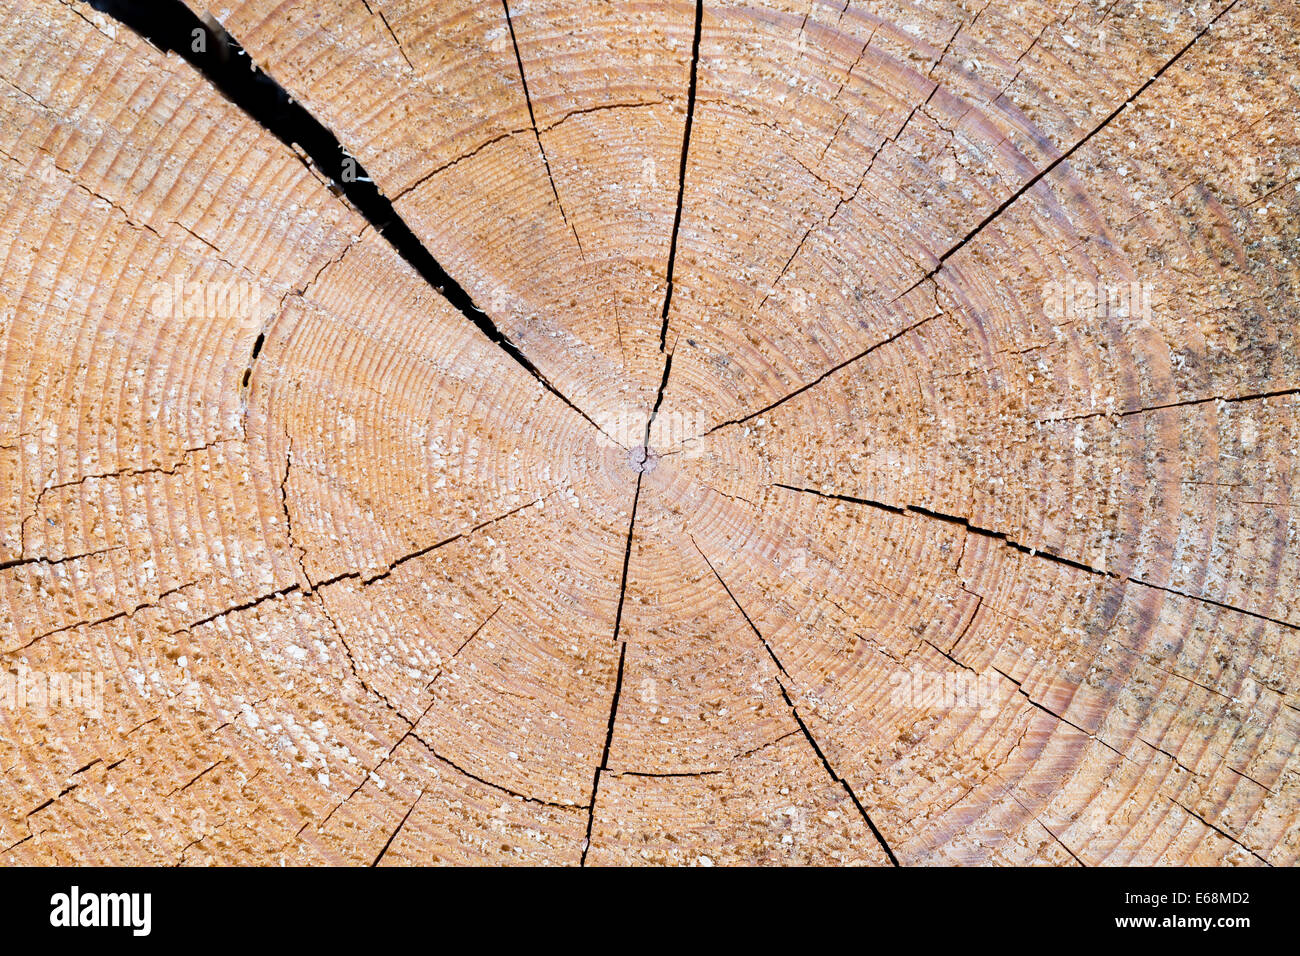 Ván gỗ: Ván gỗ tự nhiên có vẻ đẹp hoang sơ và gần gũi với thiên nhiên. Nếu bạn là người yêu thiên nhiên, hãy xem các hình ảnh ván gỗ đầy sức sống và được chế tác tinh xảo này.